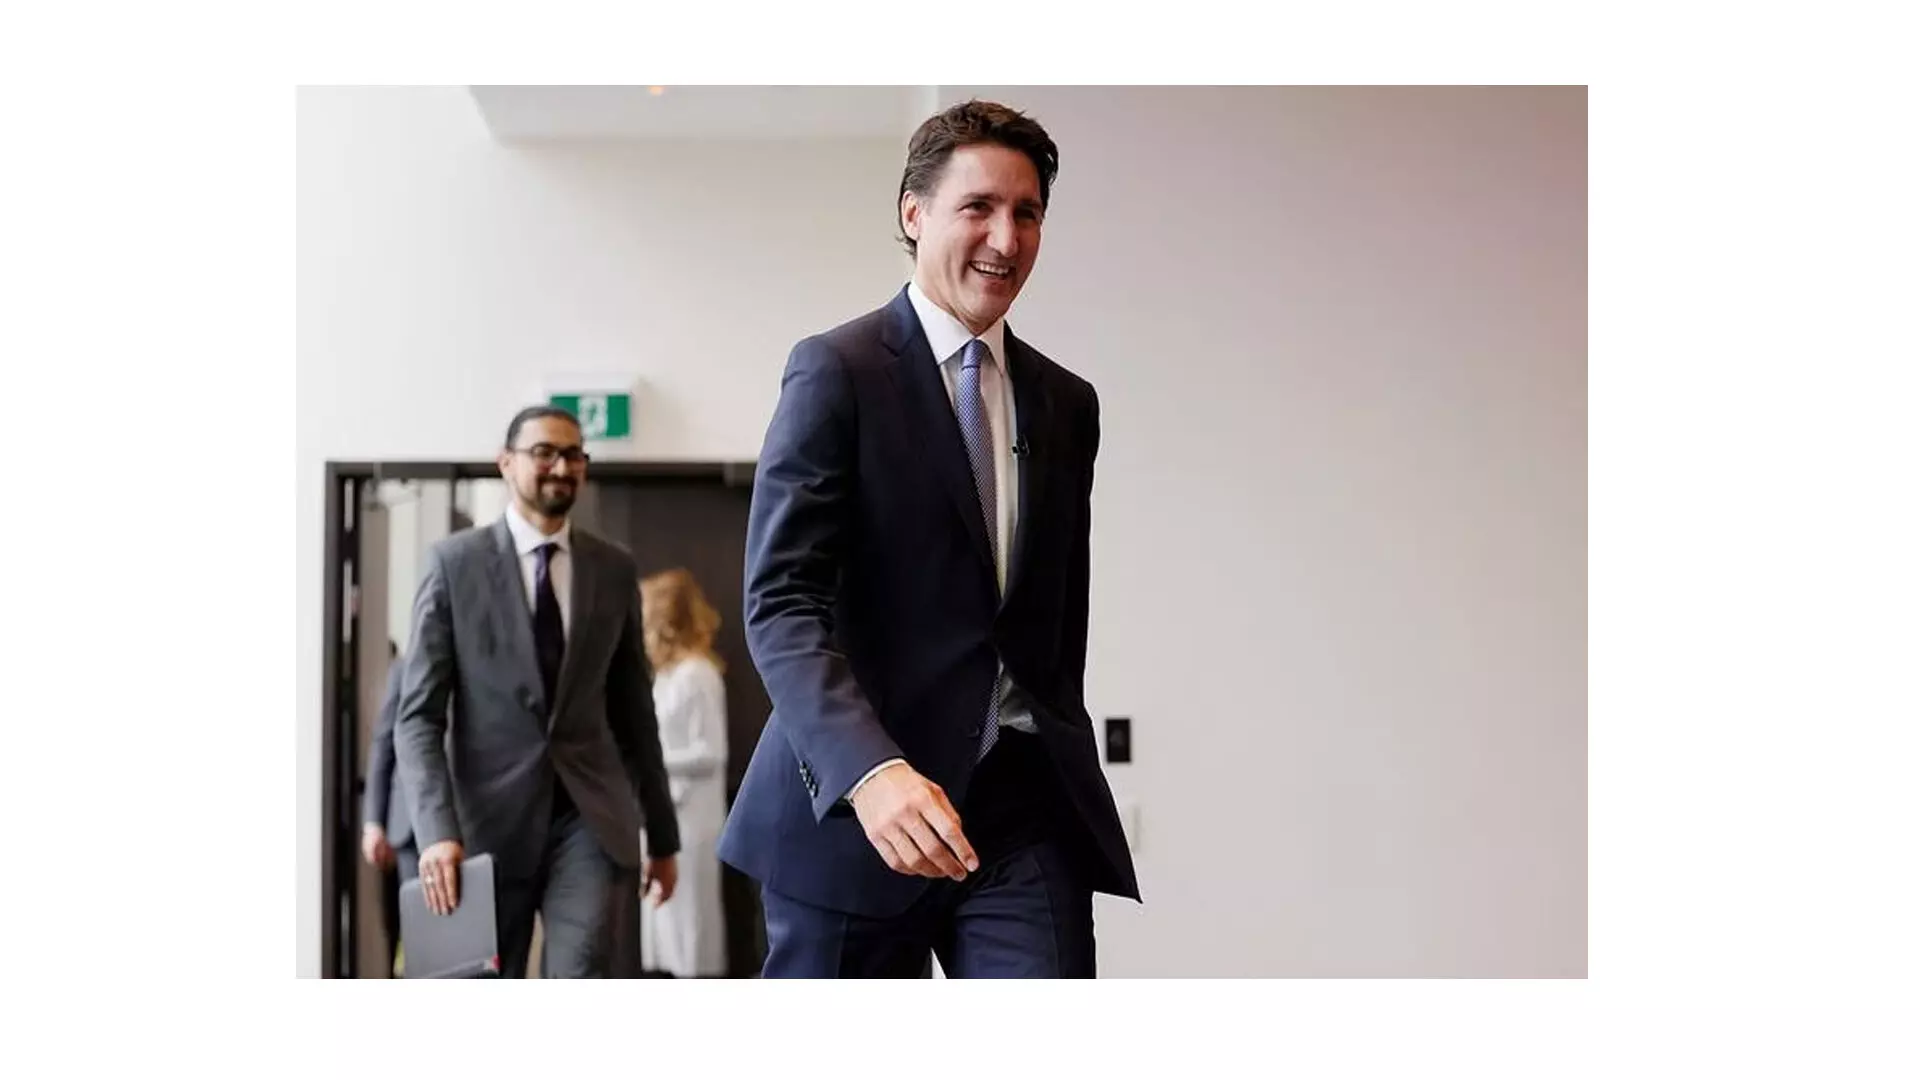 कनाडा के प्रधानमंत्री ट्रूडो का कहना है कि वह अक्सर अपनी पागल नौकरी छोड़ने पर विचार करते हैं, लेकिन रुकेंगे